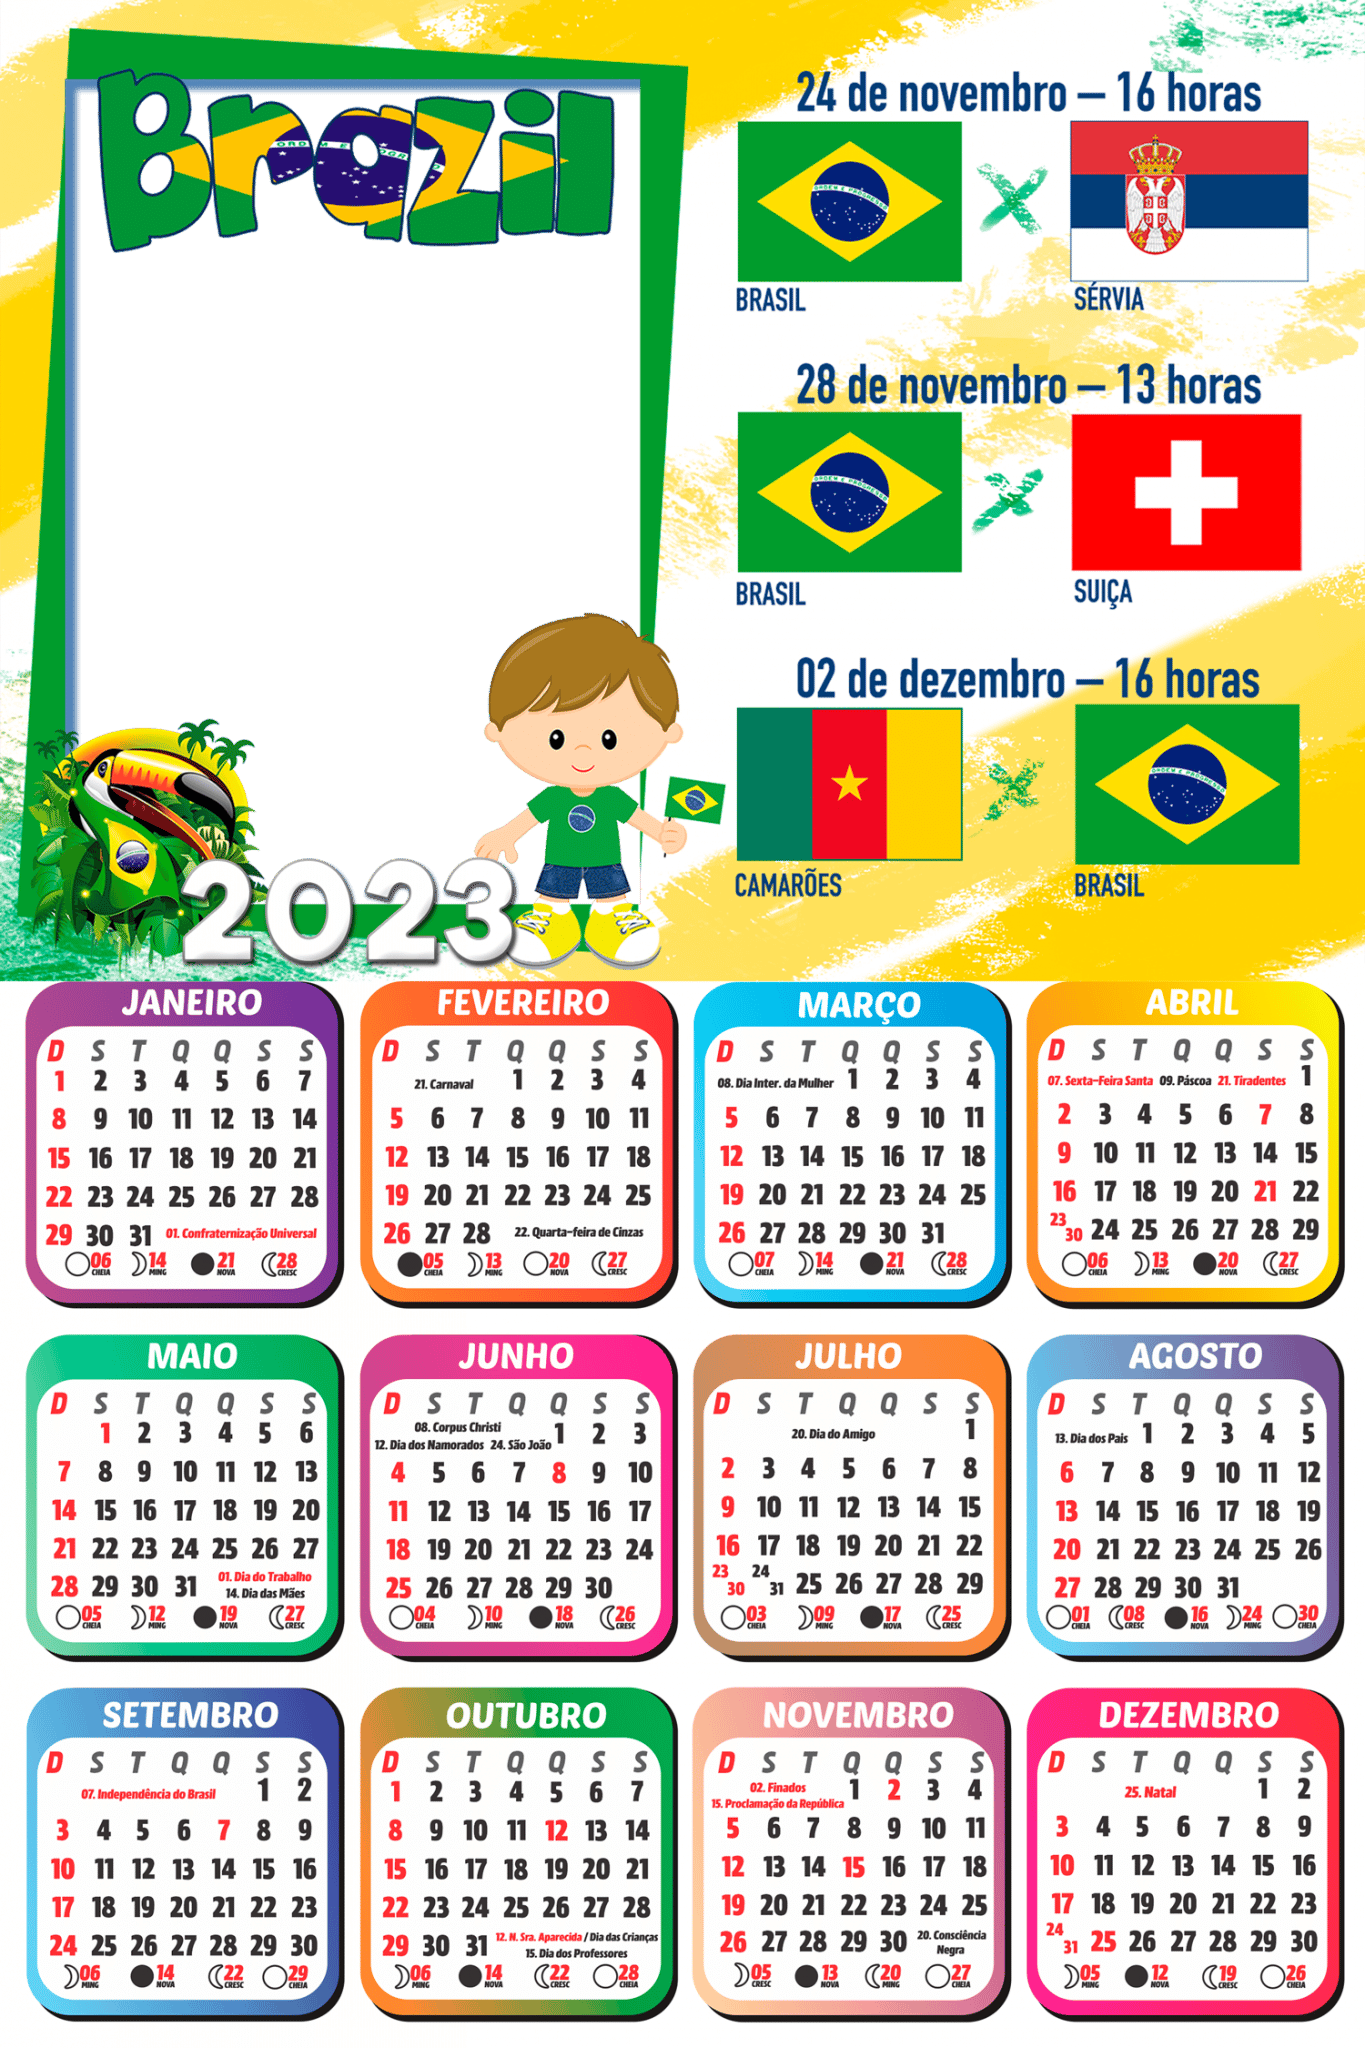 https://www.imagemlegal.com.br/wp-content/uploads/2022/08/Calendario-2023-Jogos-do-Brasil-Copa-do-Mundo-Catar-PNG-1365x2048.png